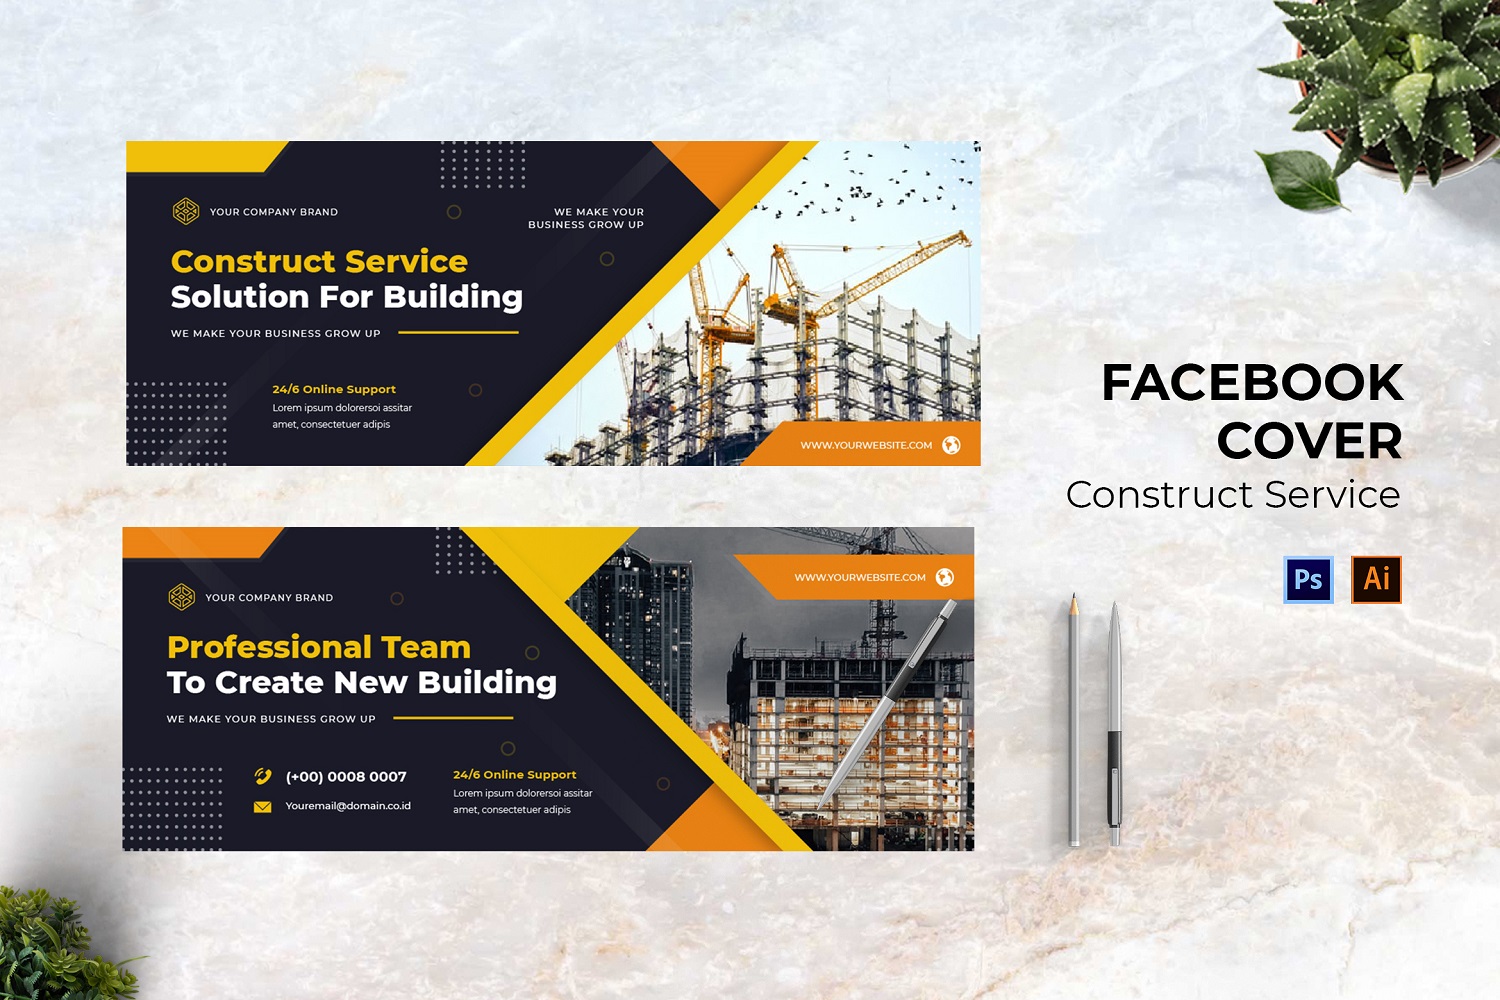 Construct Service Facebook Cover Social Media